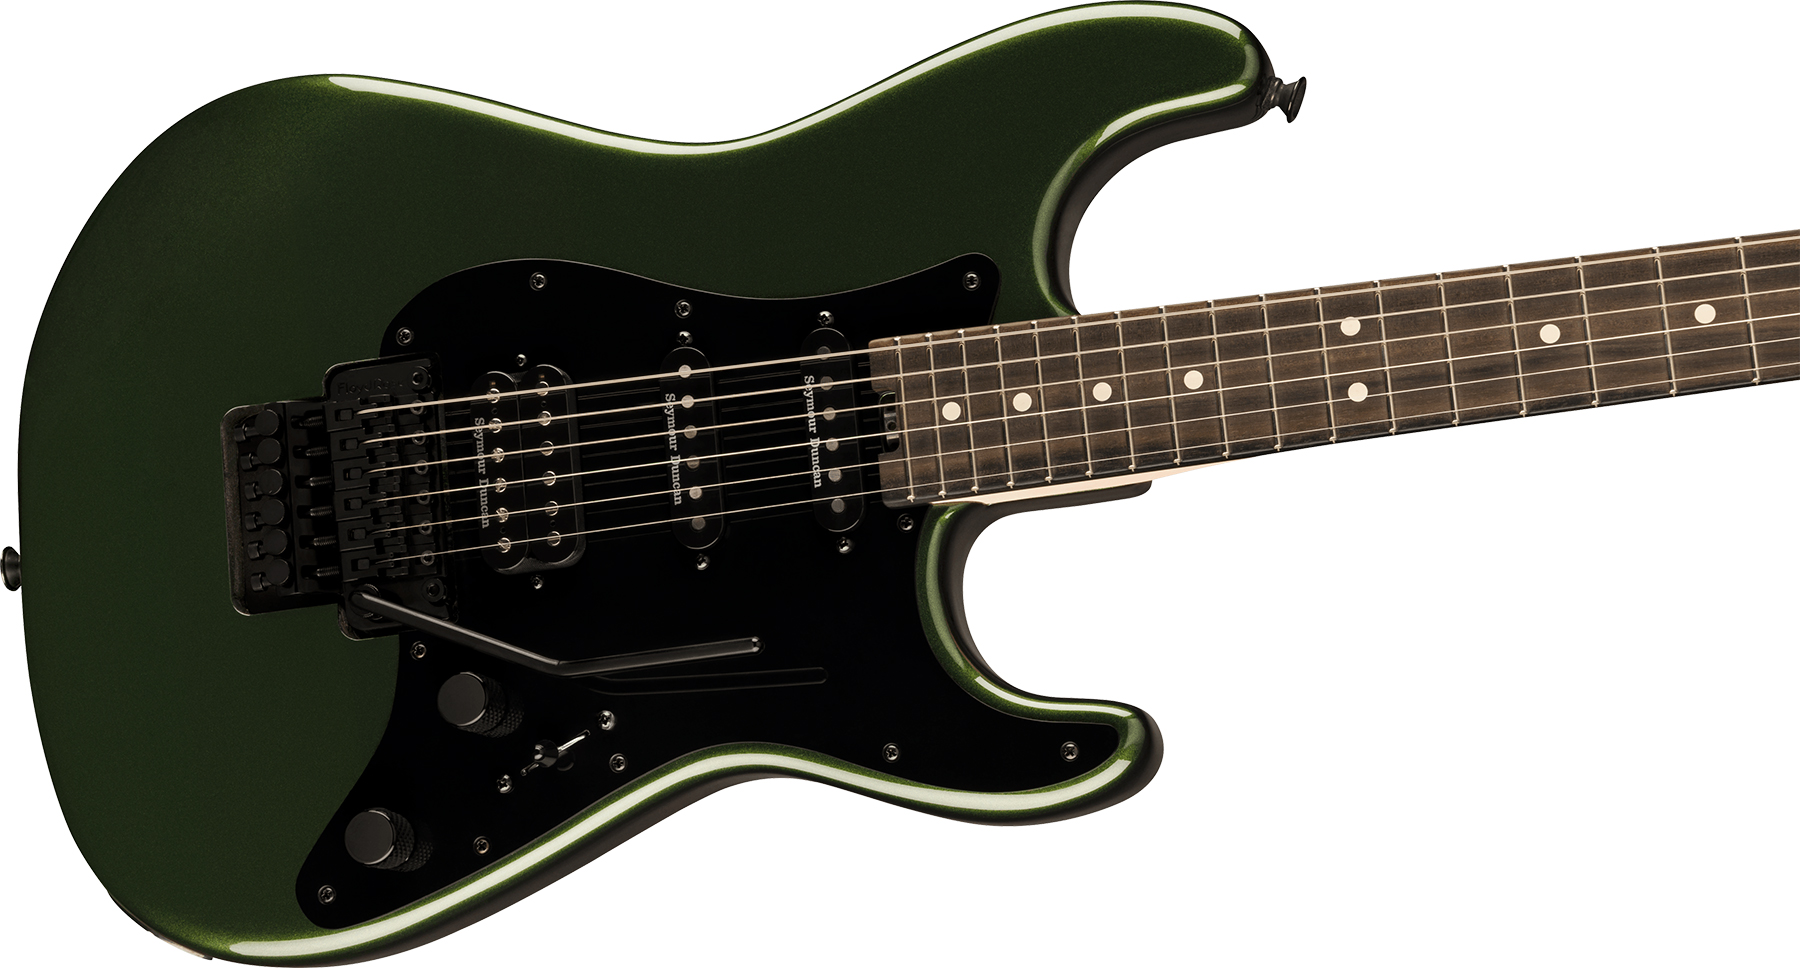 Charvel So-cal Style 1 Hss Fr E Pro-mod Seymour Duncan Eb - Lambo Green - E-Gitarre in Str-Form - Variation 2